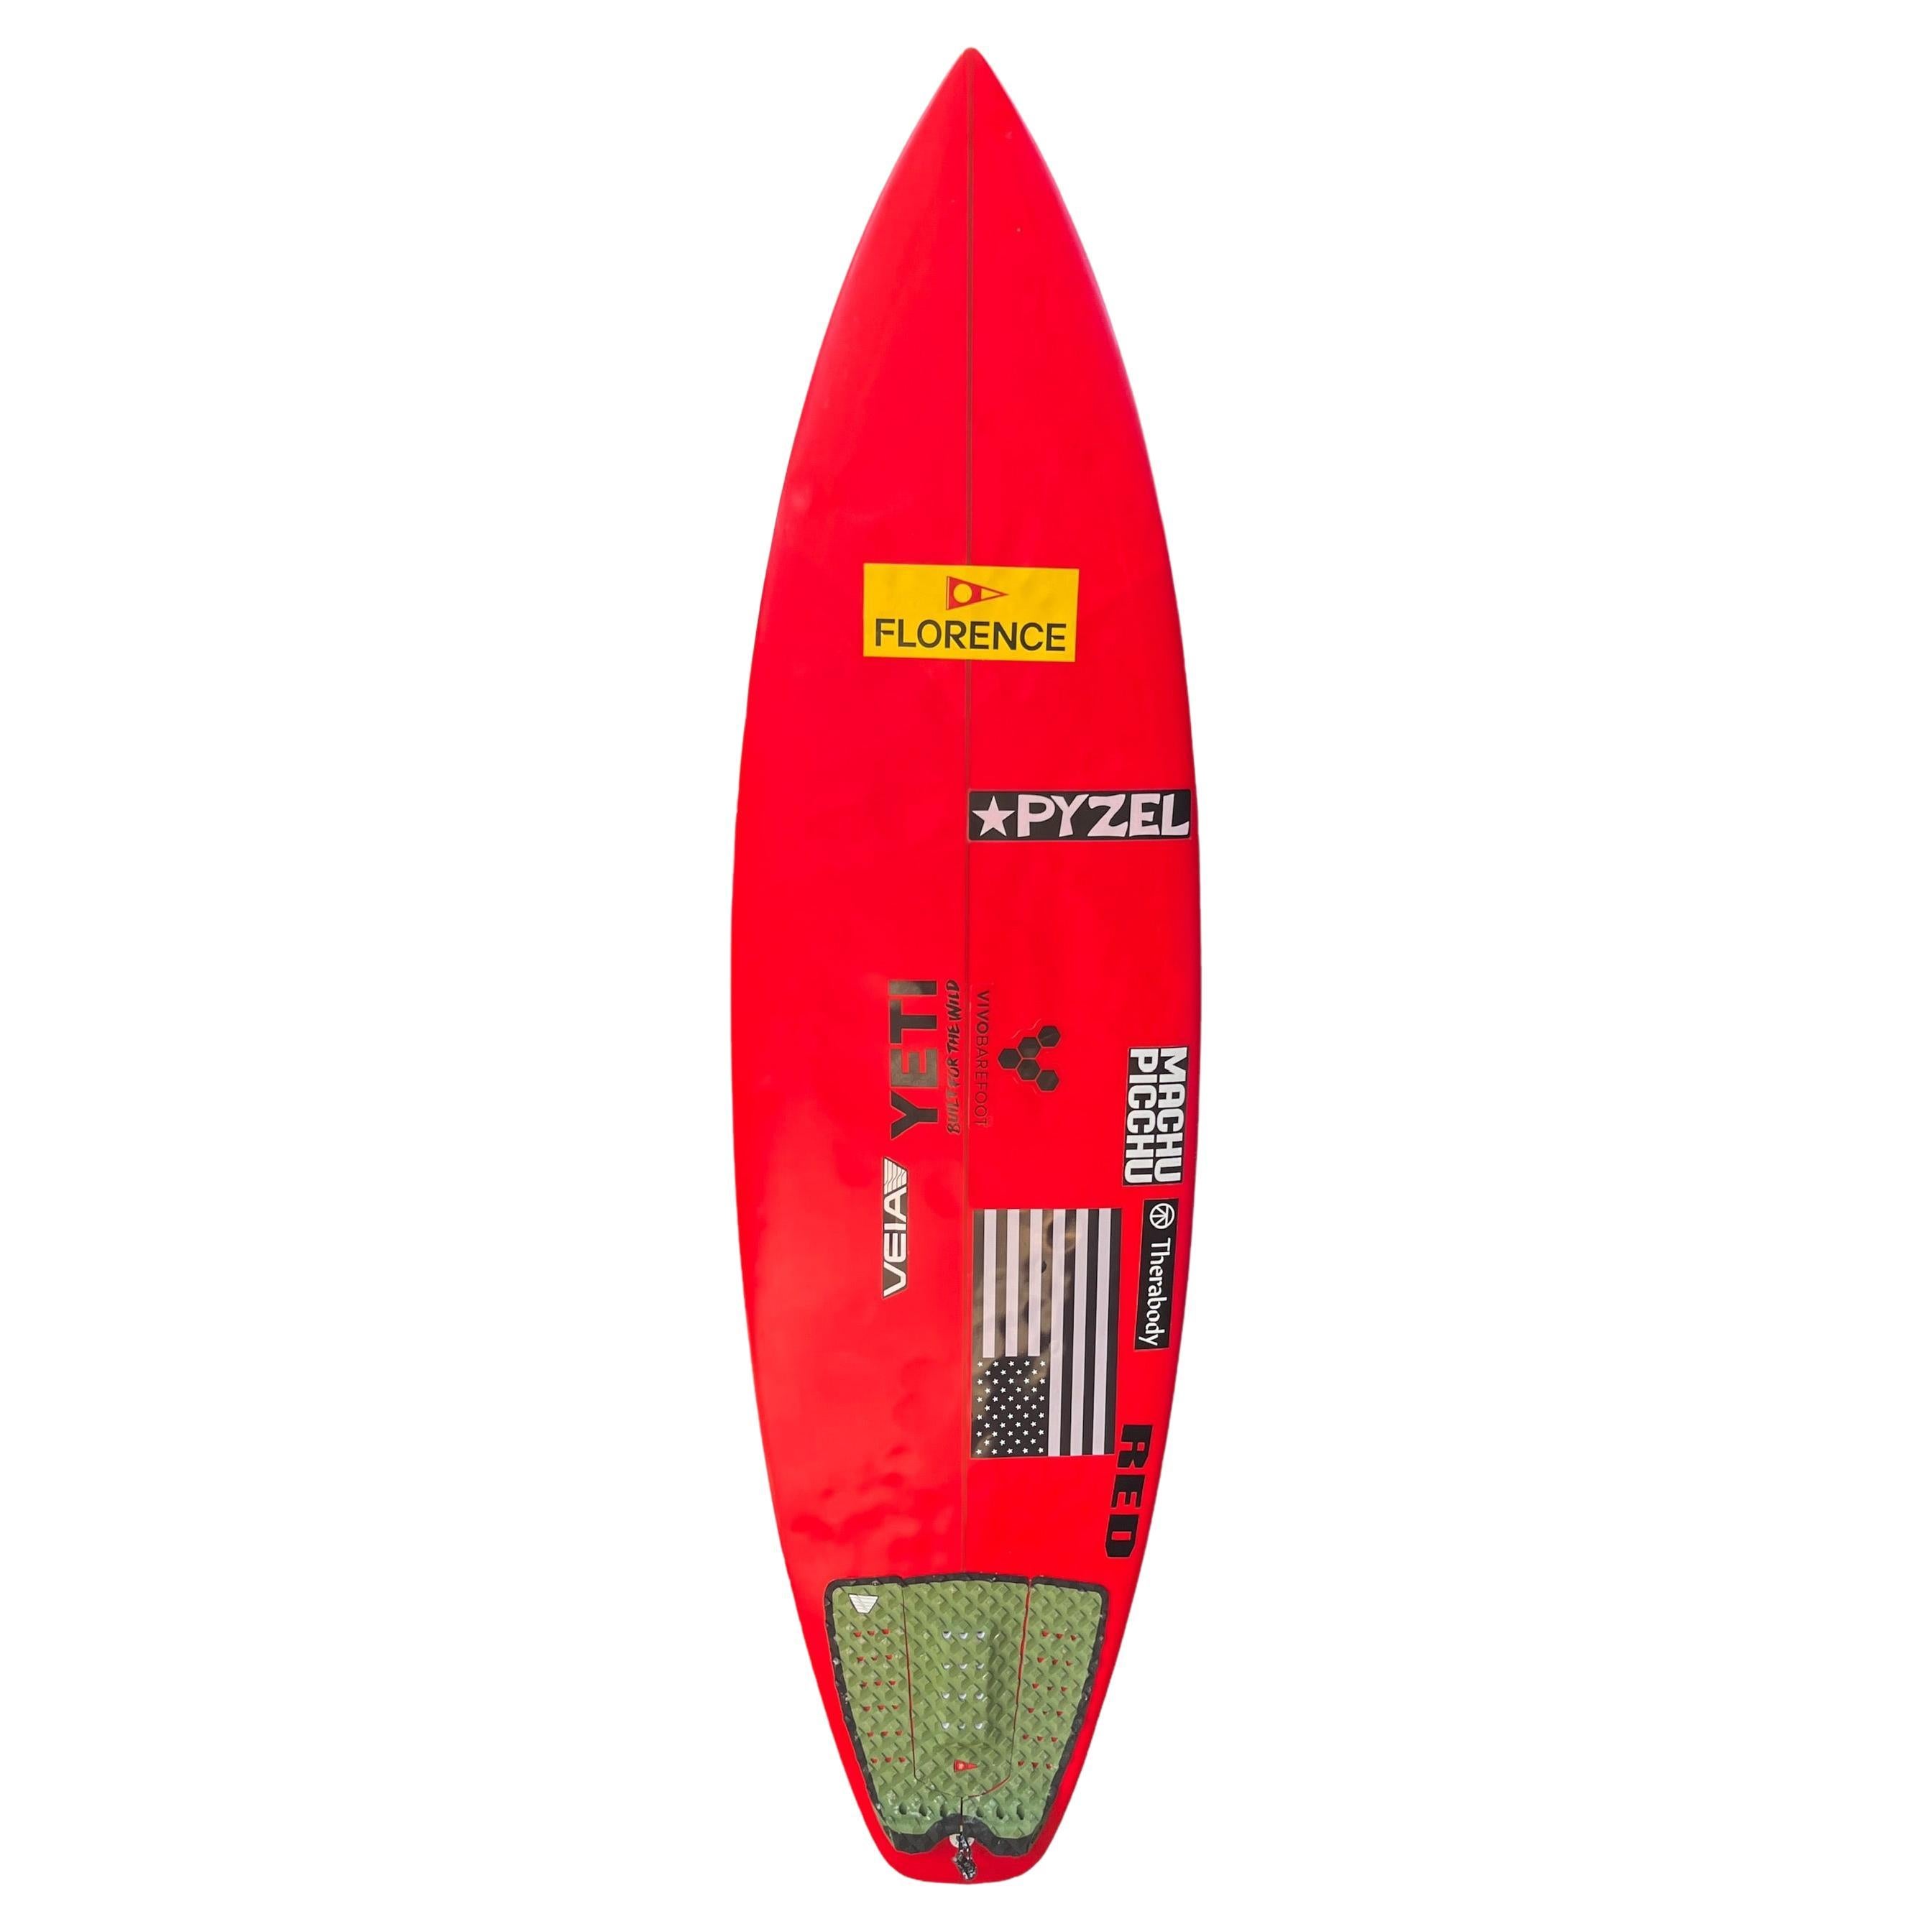 Planche de surf personnelle de John Johns, 2 fois champion du monde en vente